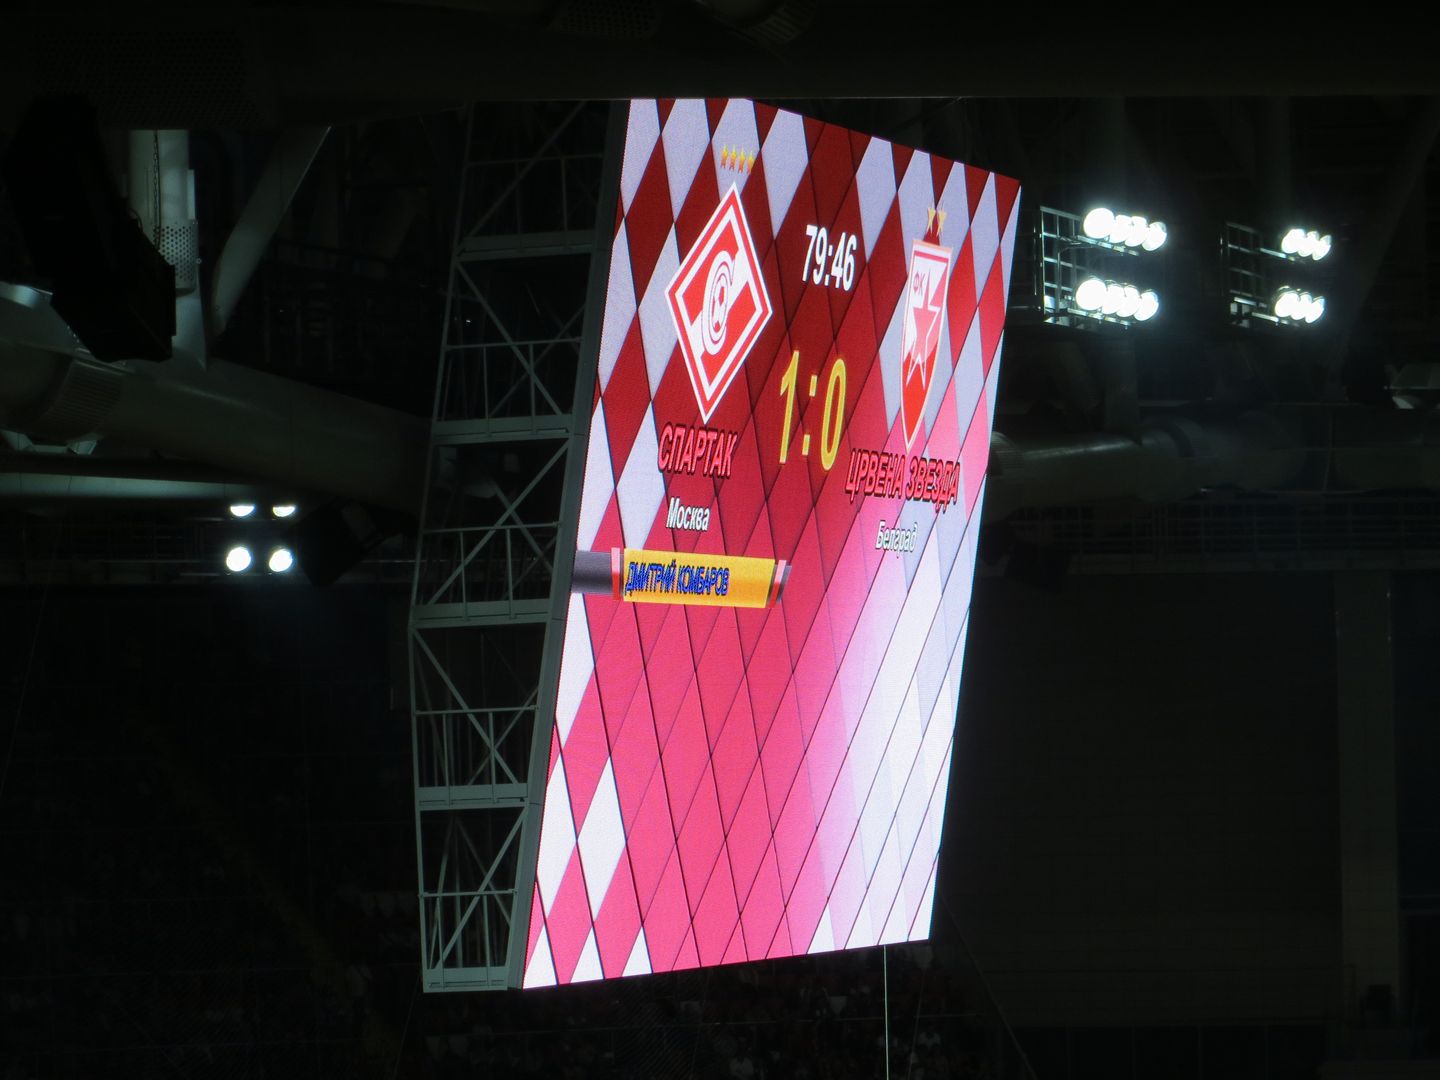 Матч открытия стадиона Спартака. 5 сентября 2014